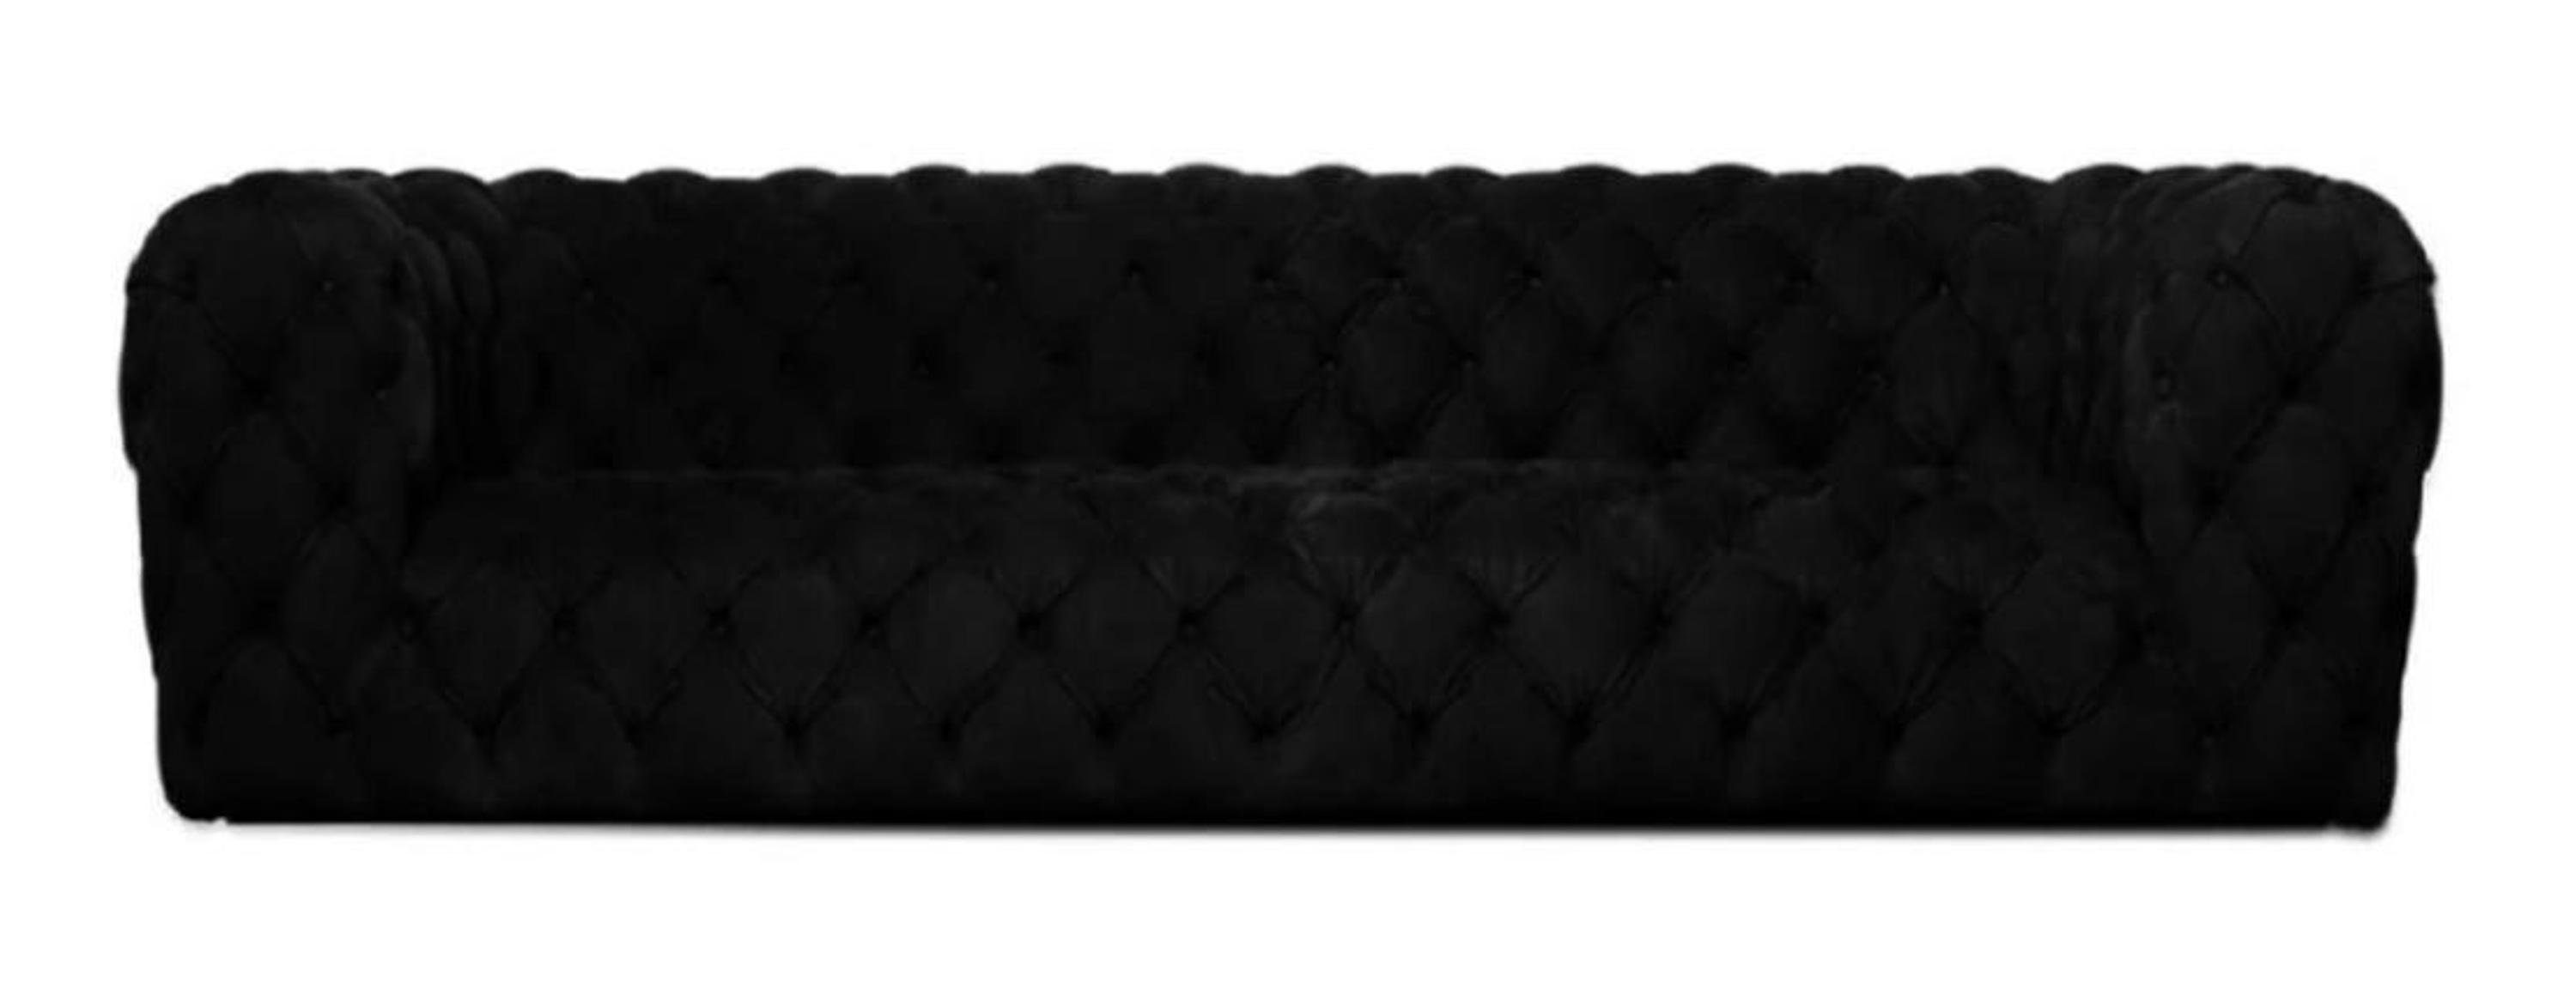 JVmoebel Chesterfield-Sofa, xxl Gelbe Chesterfield gemütliche Viersitzer Schwarz sofa Couch big